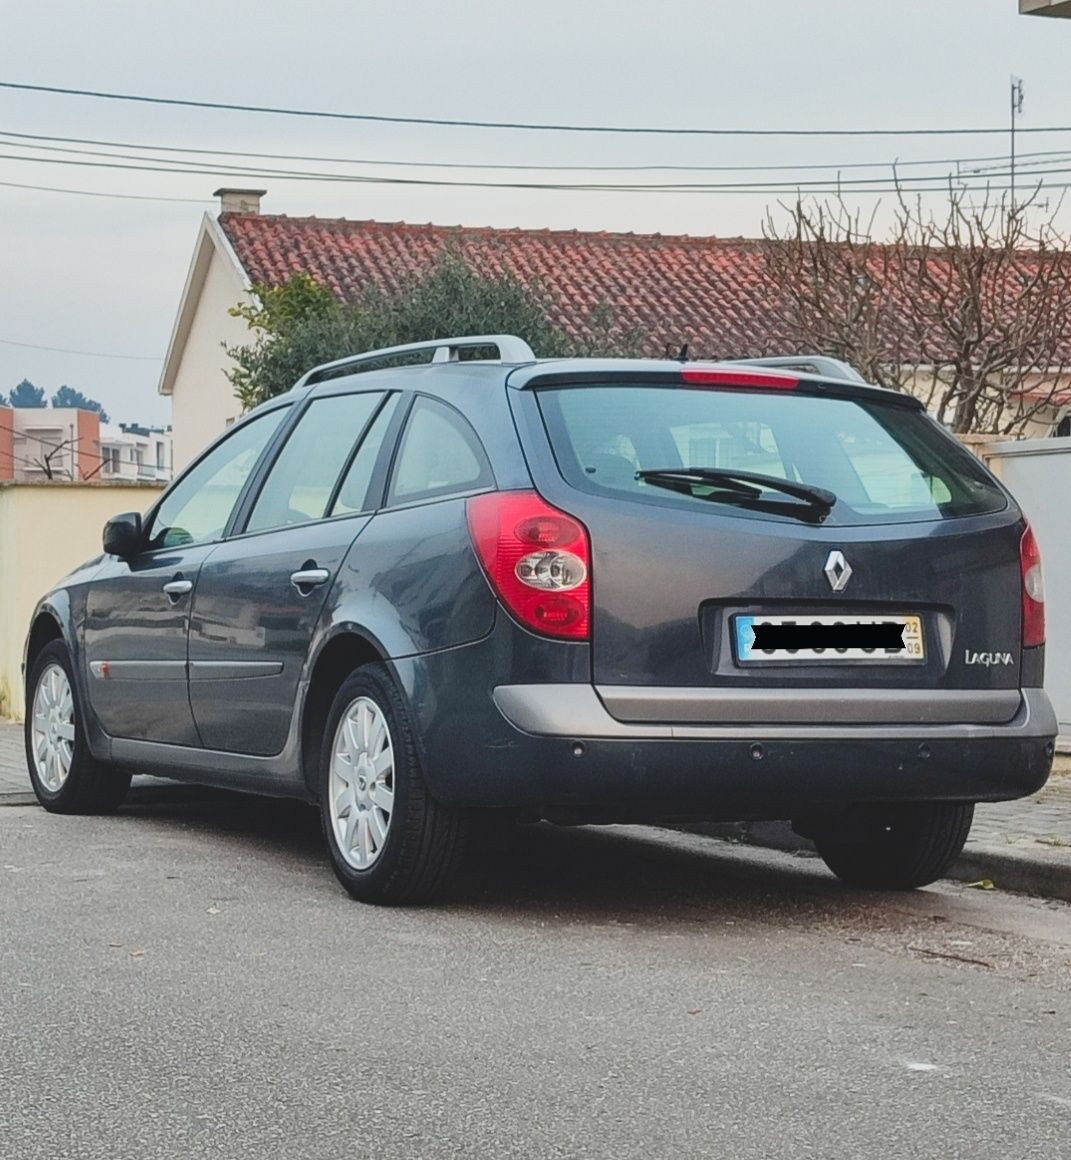 Renault Laguna 2002